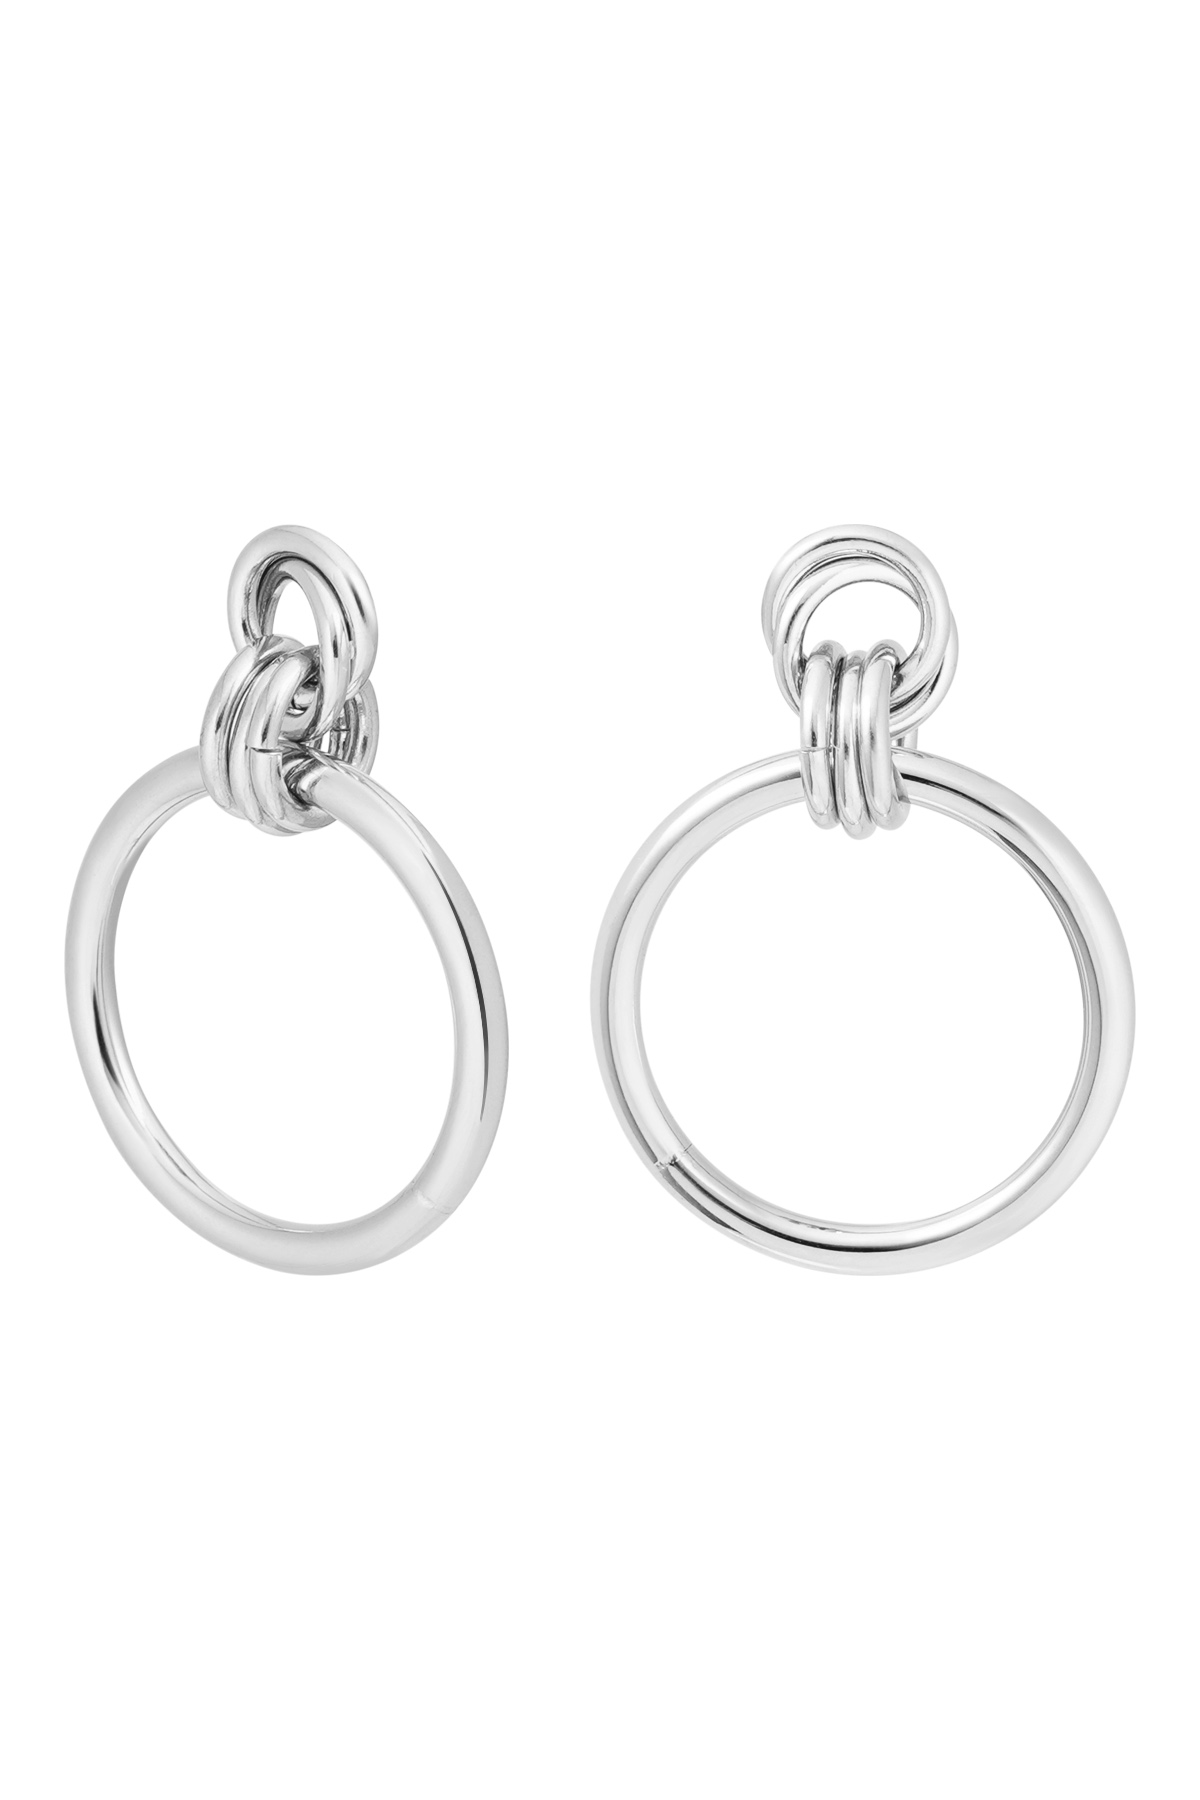 Ohrringe mit verbundenen Kreisen, schlicht – Silber h5 